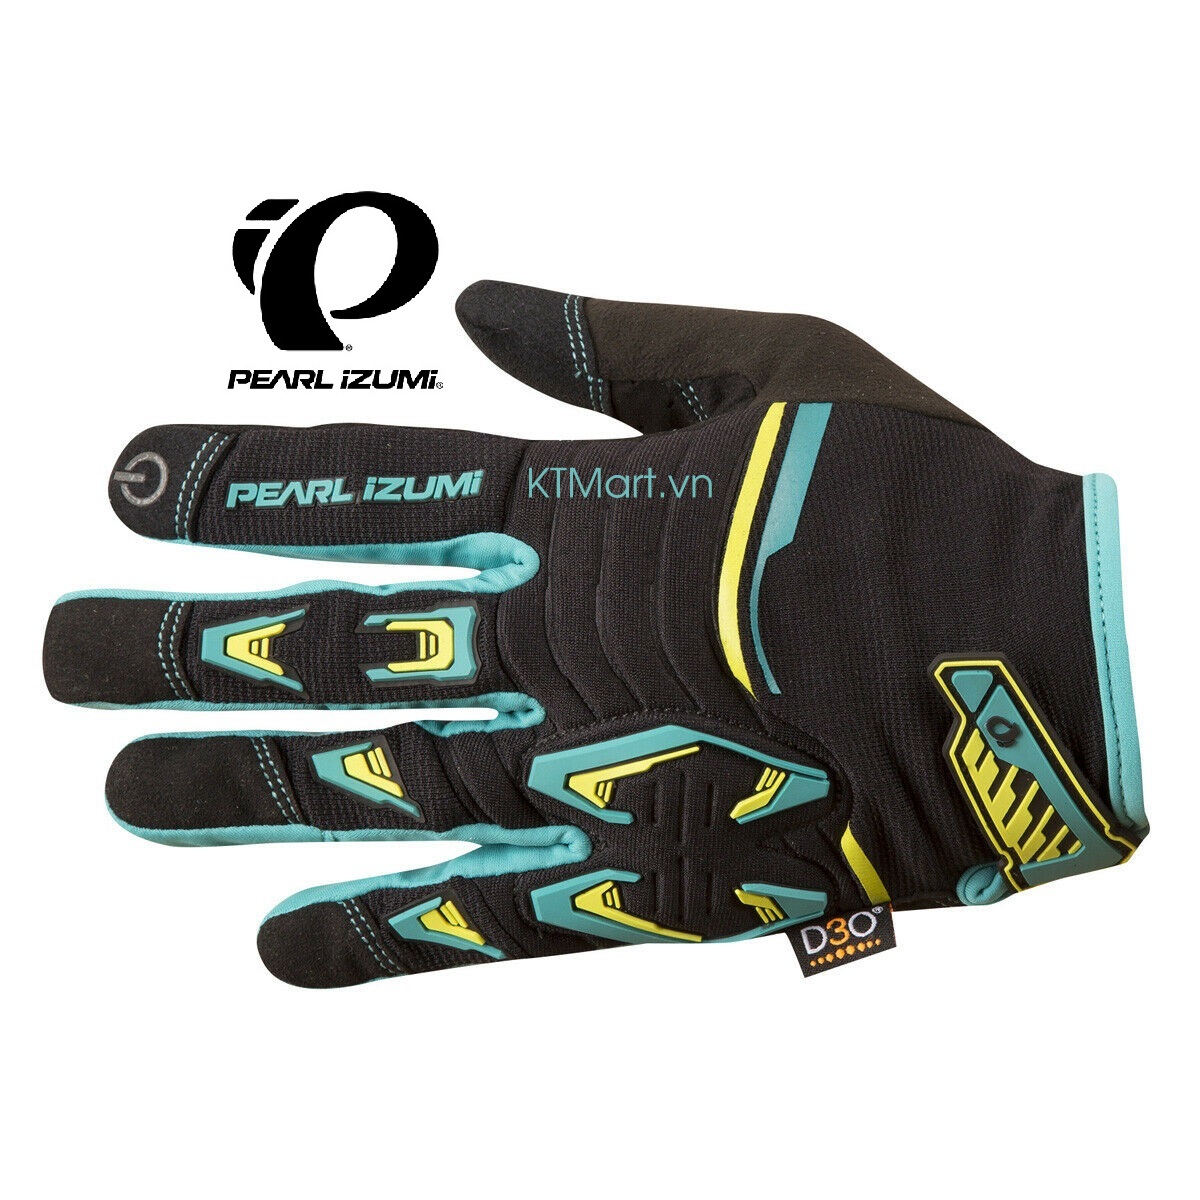 Pearl Izumi Mens Launch Full Finger MTB Cycling Gloves 14341503 Pearl Izumi size M